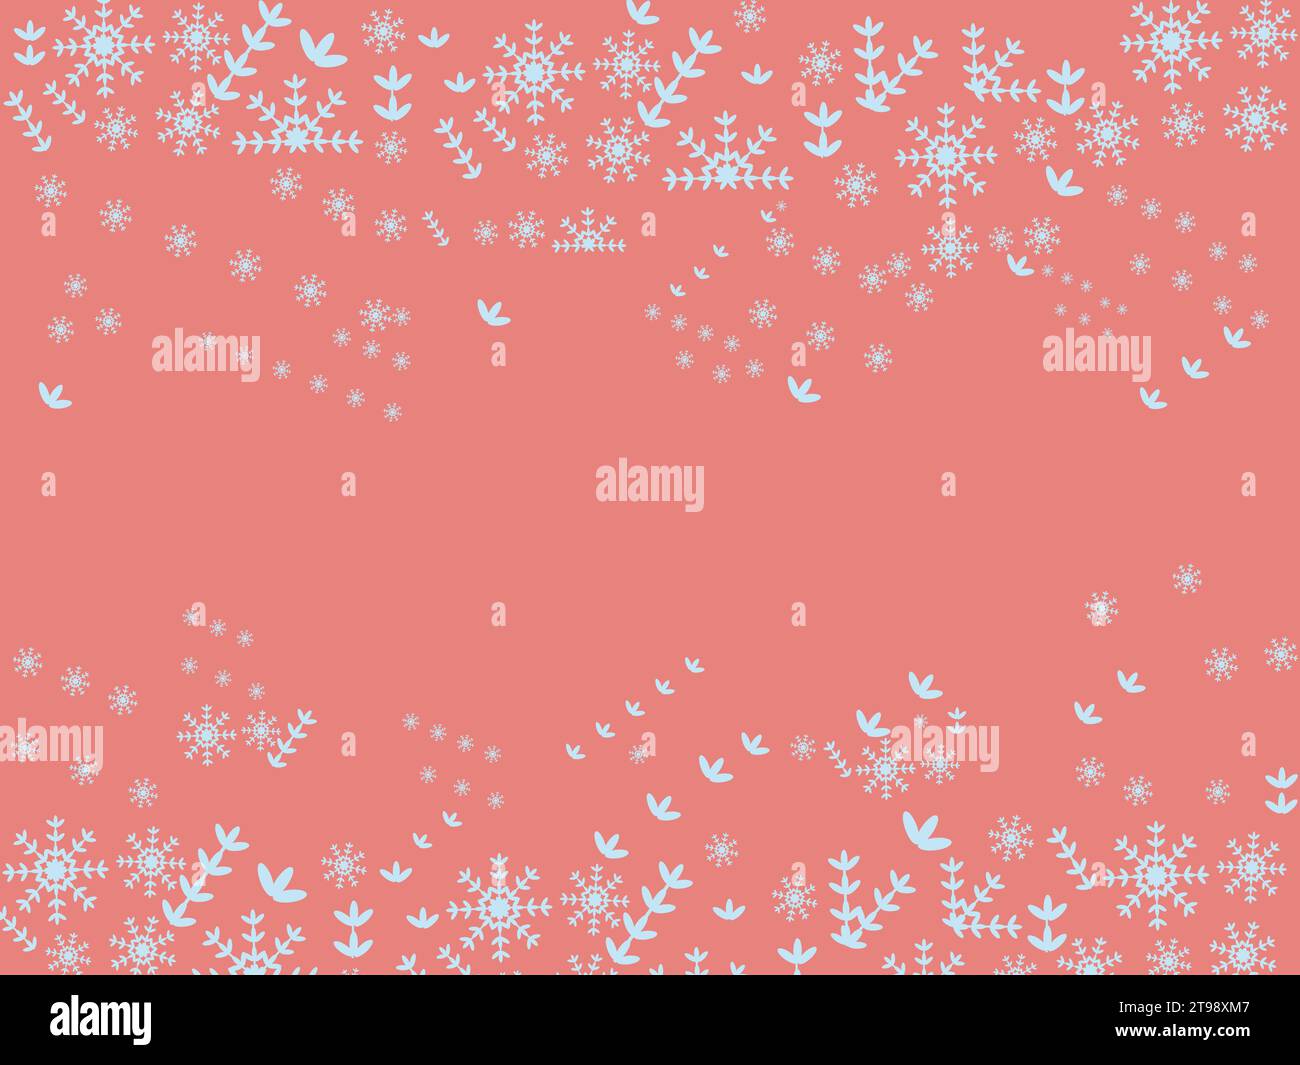 Schneeflocke nahtloses Muster Weihnachten-Winter Grenze- Schnee Nacht-fallende Schneeflocken auf blauem Hintergrund-Schneefall Vektor Illustration Stock Vektor